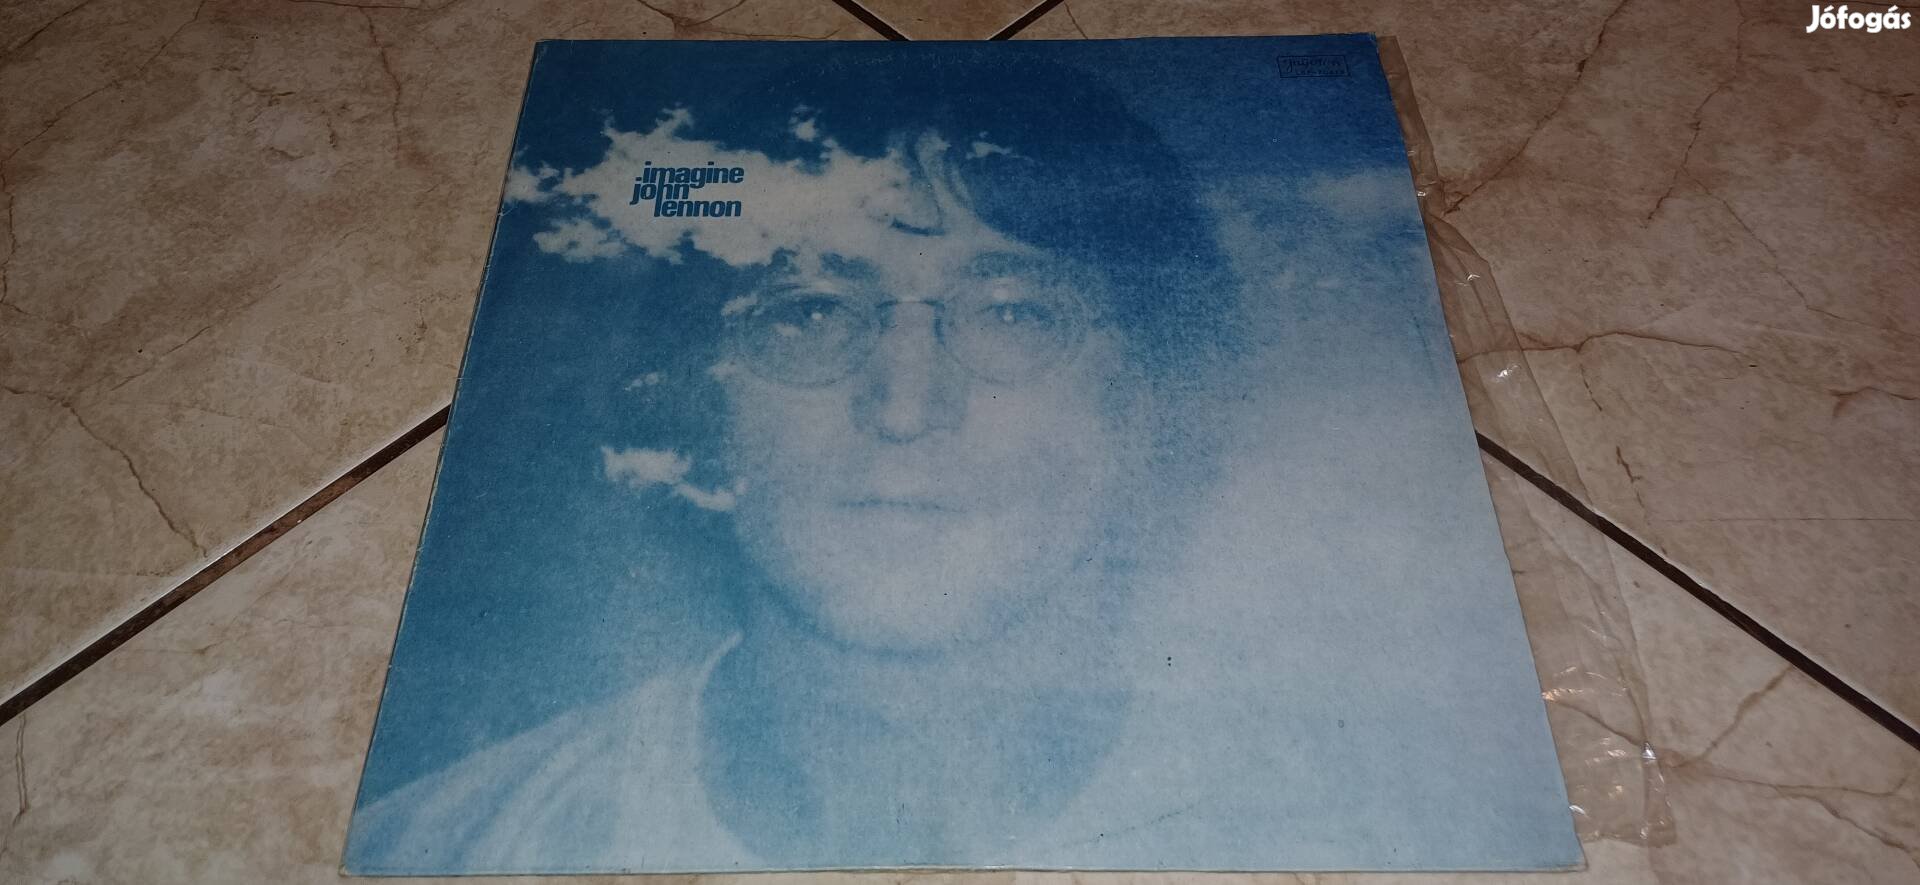 John Lennon bakelit lemez